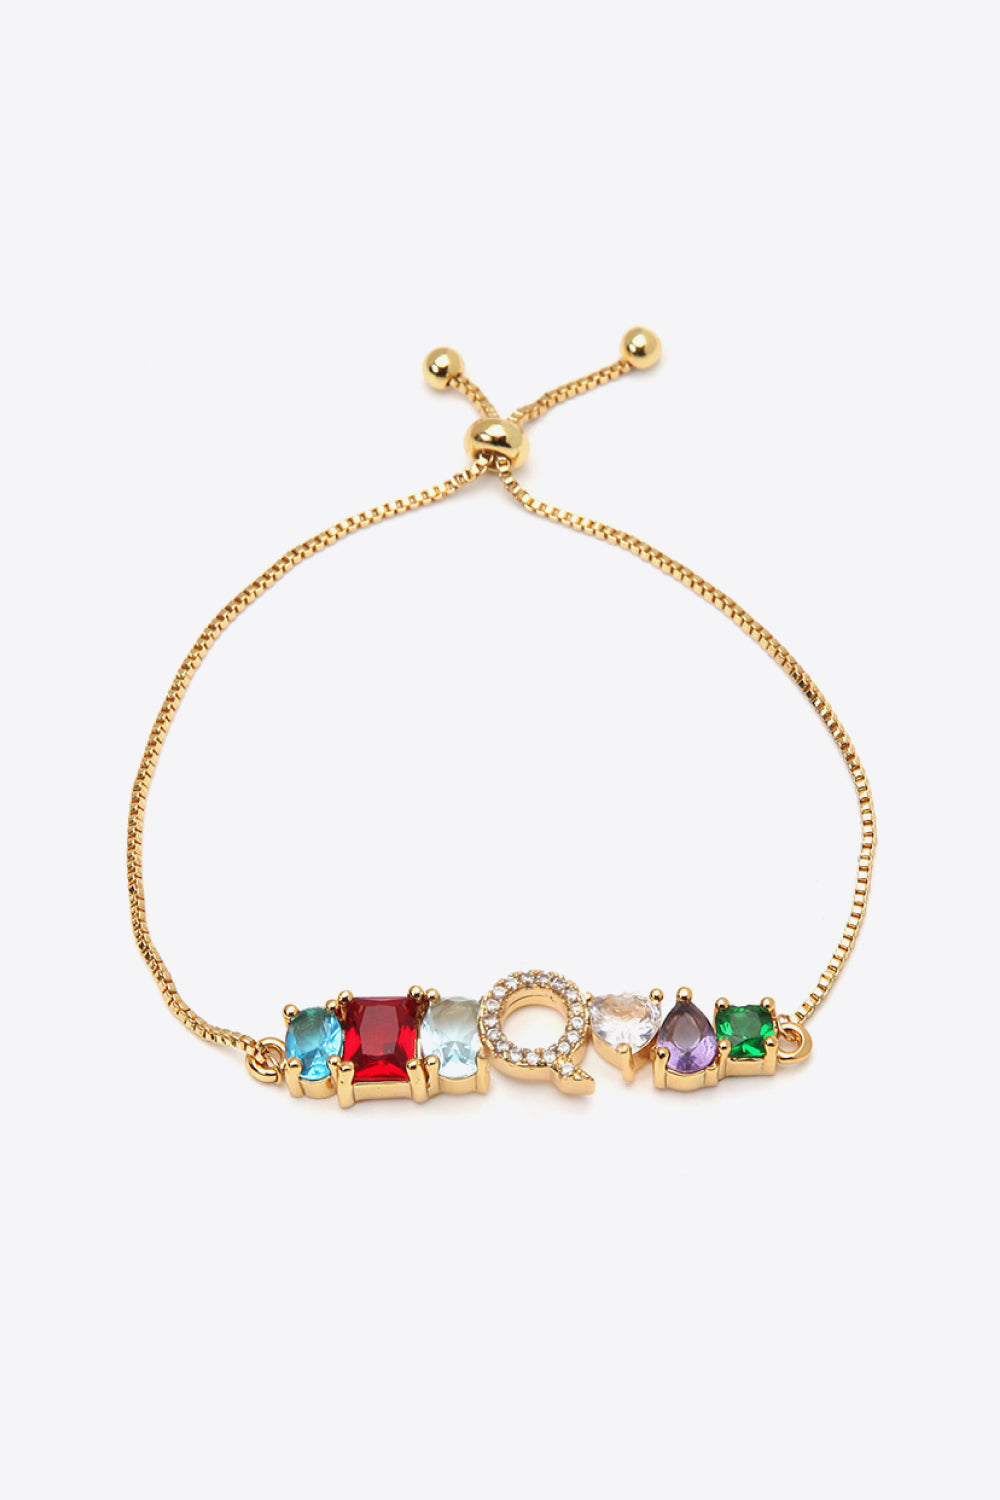 K to T Zircon Bracelet - Q / One Size - Women’s Jewelry - Bracelets - 19 - 2024